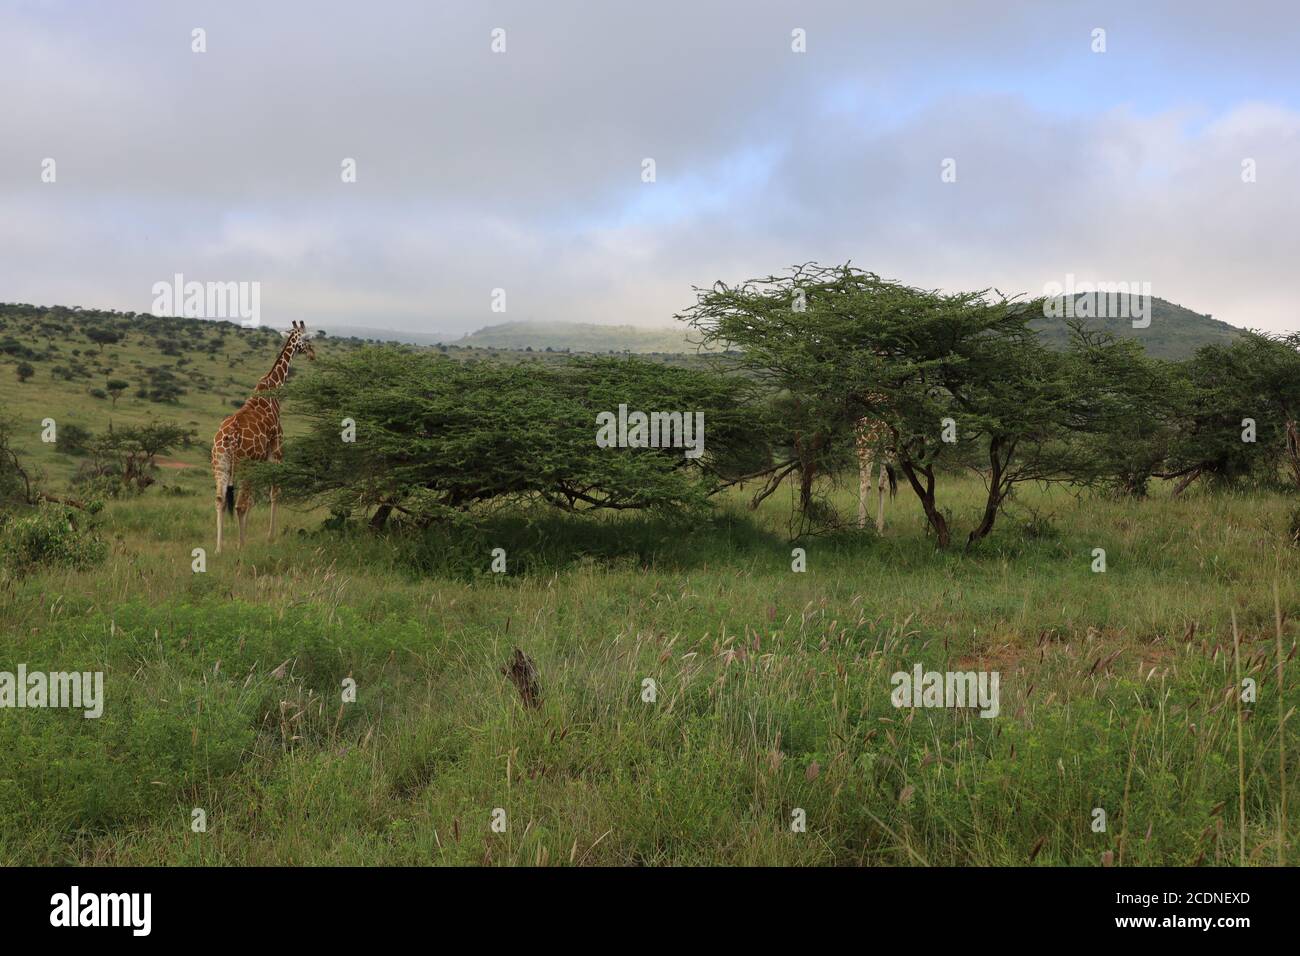 Eine anmutige Giraffe, die ihren Hals ausstreckt, um Akazienblätter zu durchstöbern. Stockfoto